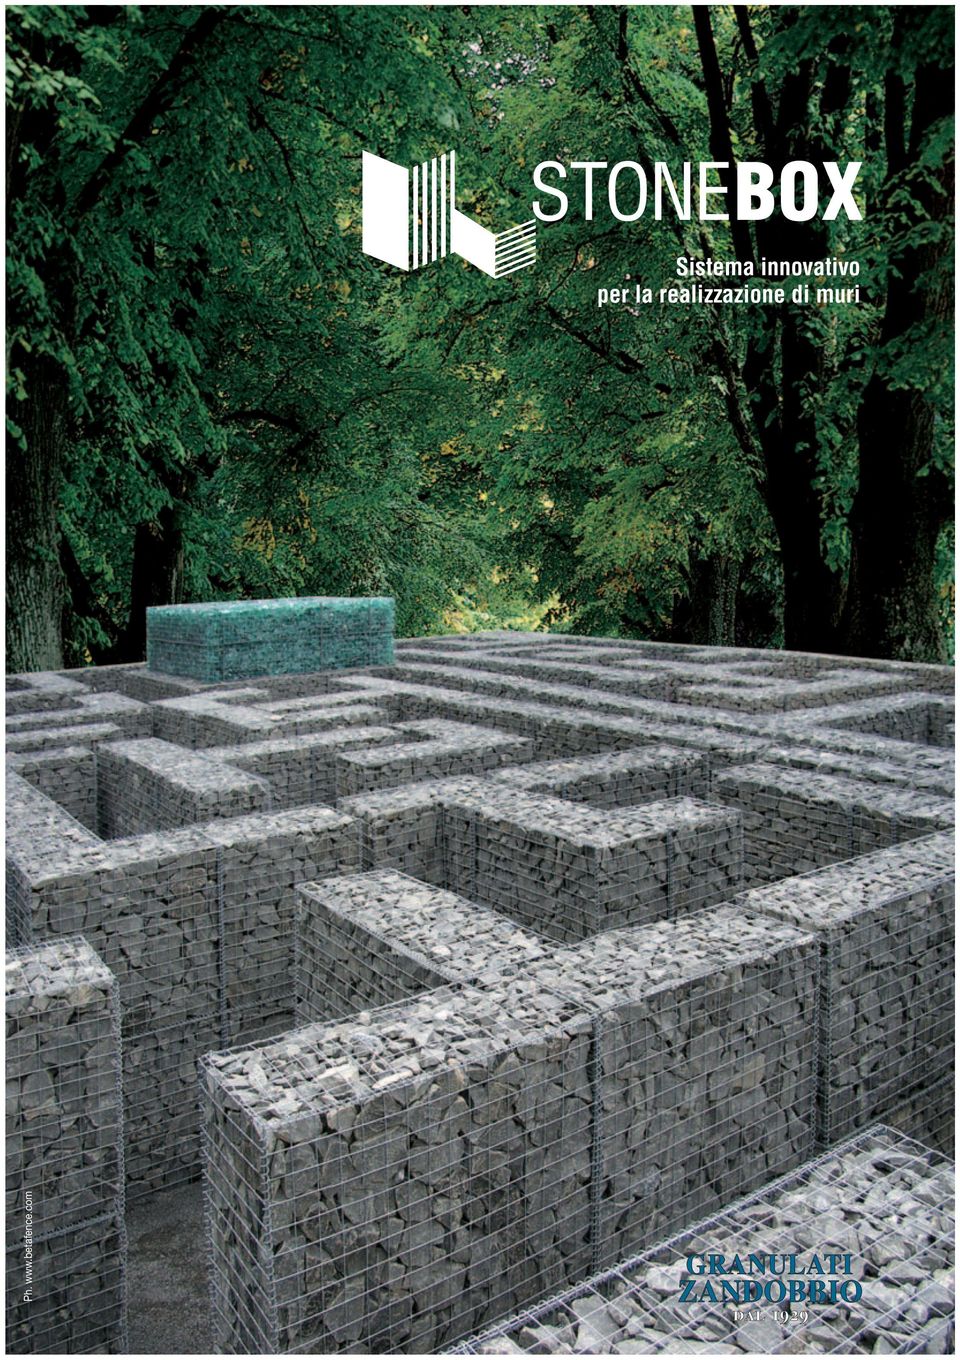 stonebox.it - www.granulati.it - e-mail:info@granulati.it Ph. www.betafence.